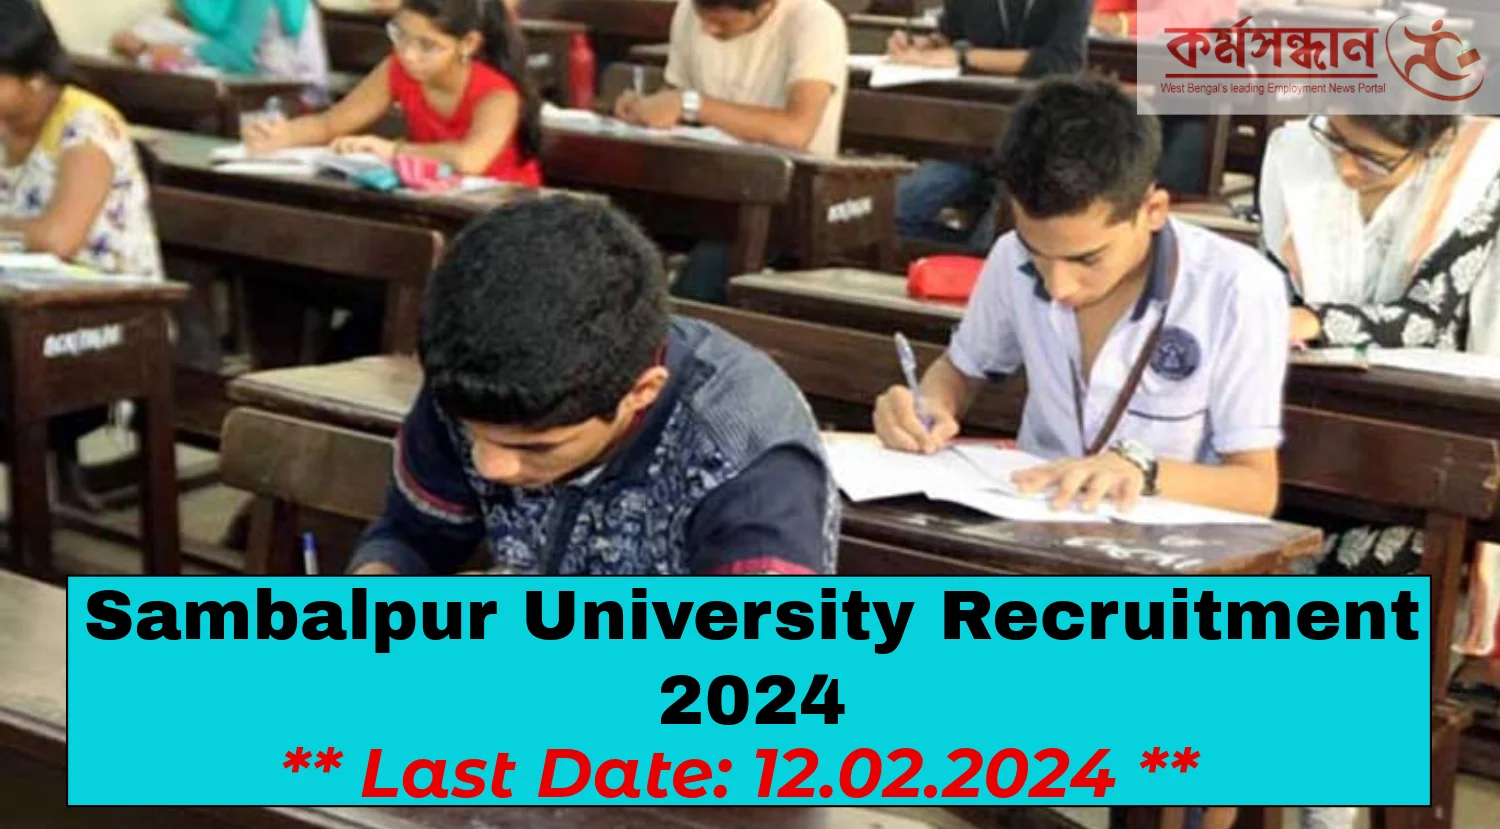 Sambalpur University Recruitment 2024